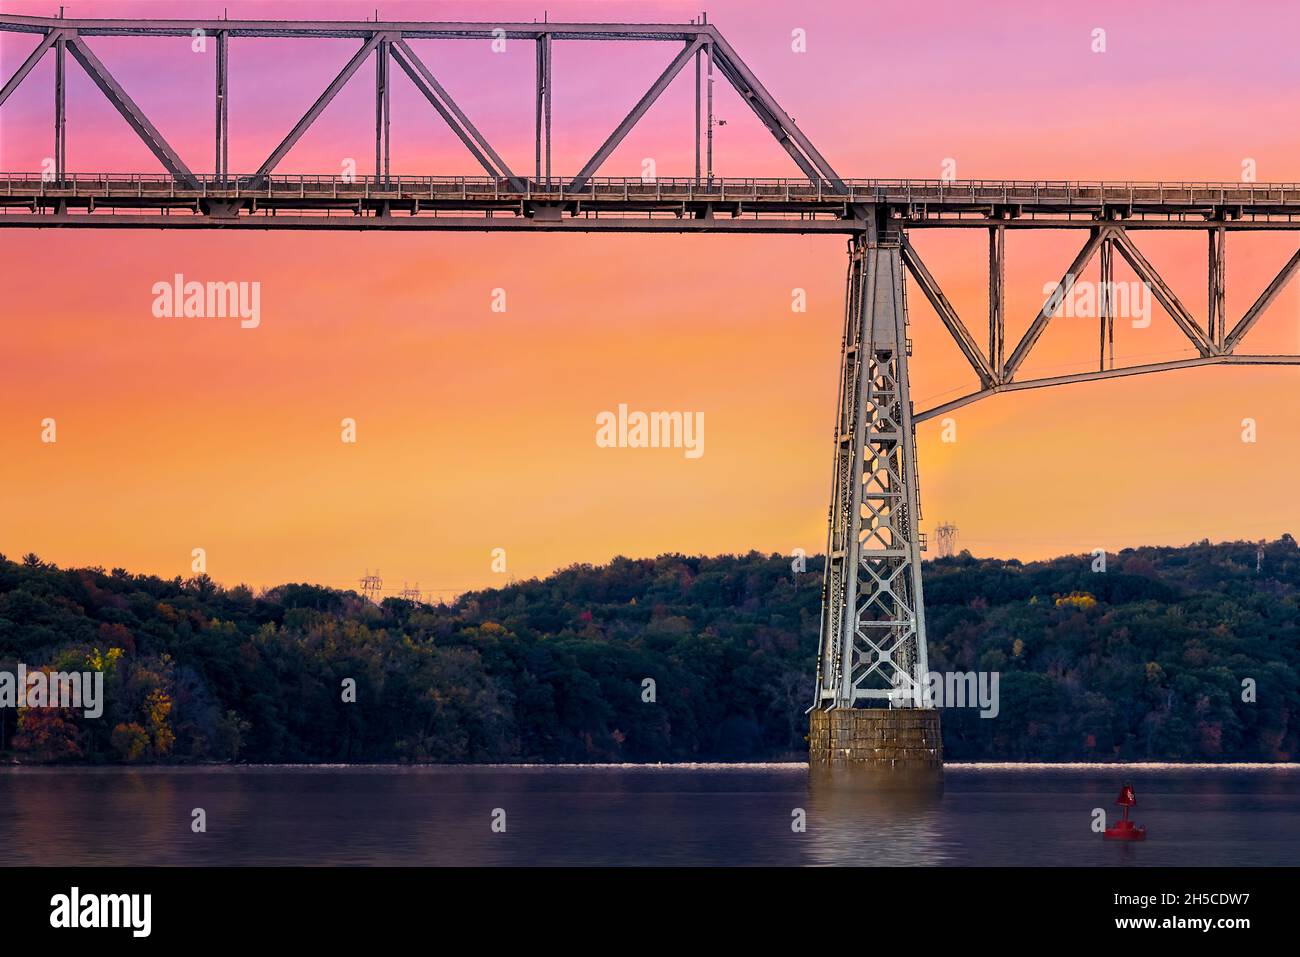 Puente Rip Van Winkle - El puente Rip Van Winkle es un puente voladizo que cruza el río Hudson entre Hudson, Nueva York y Catskill, Nueva York. Foto de stock